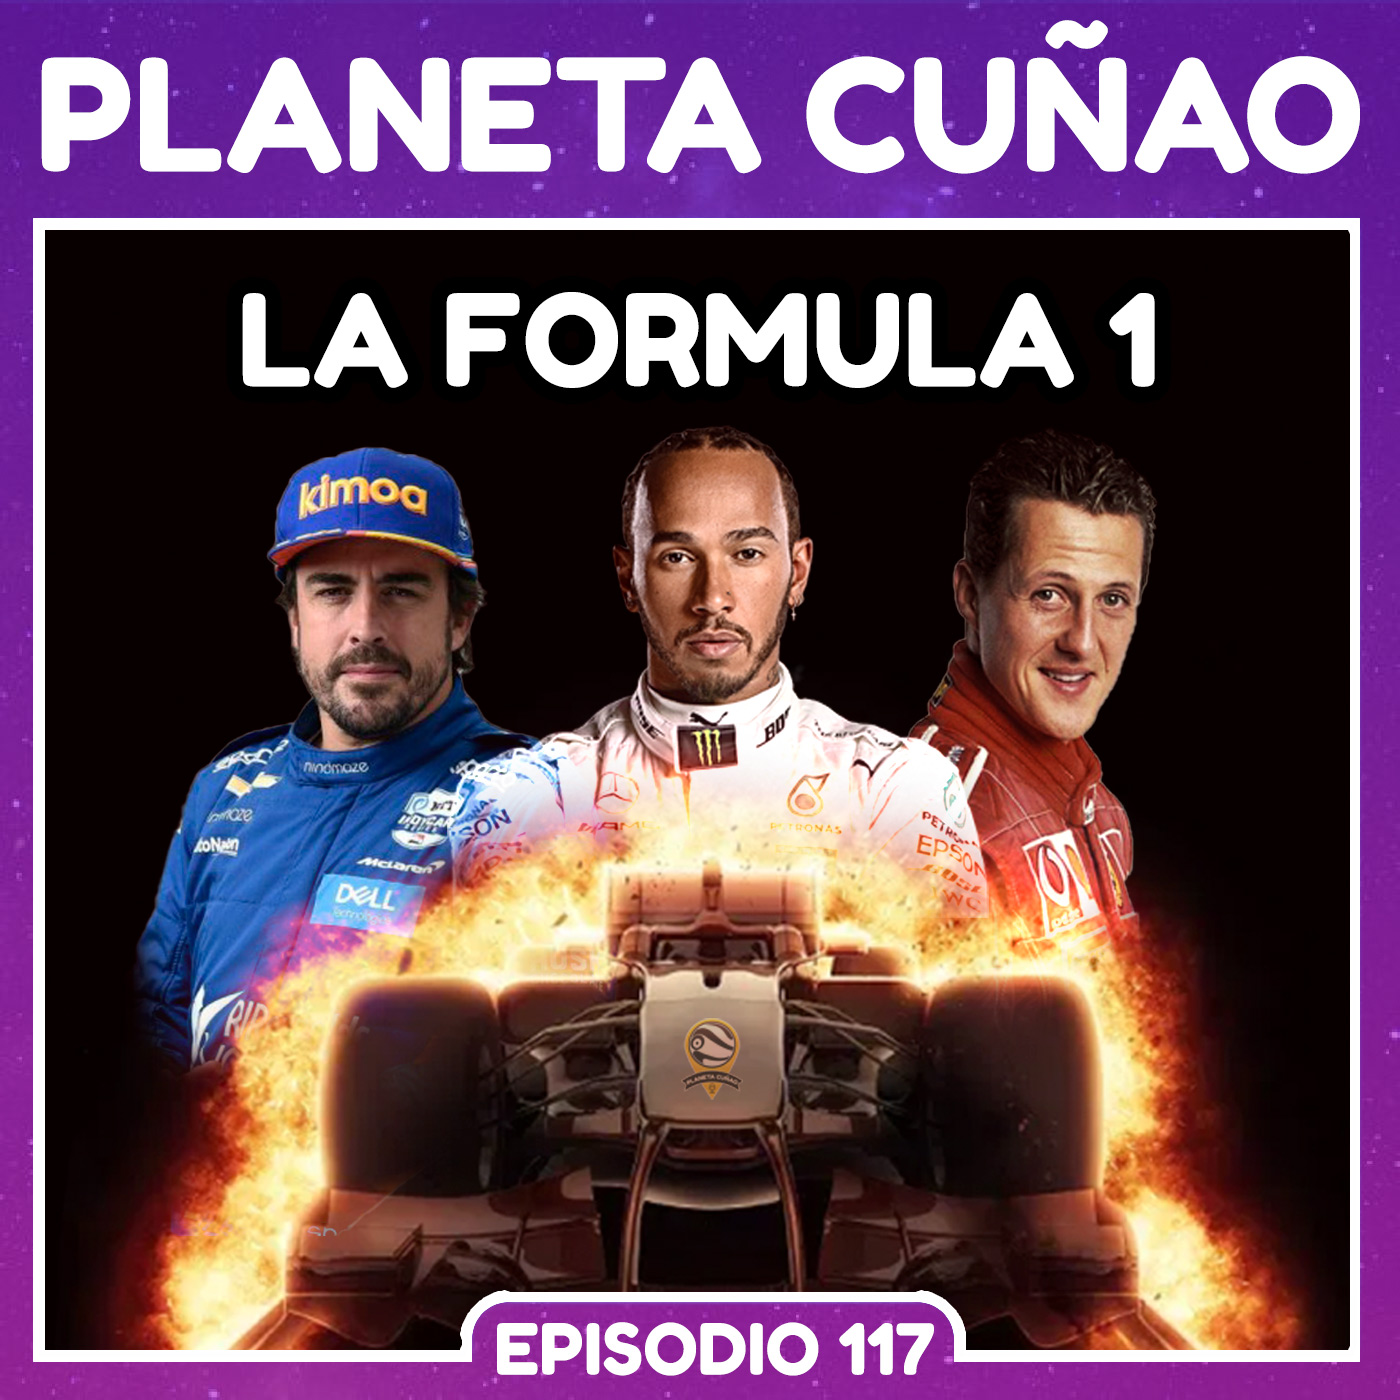 La Fórmula 1